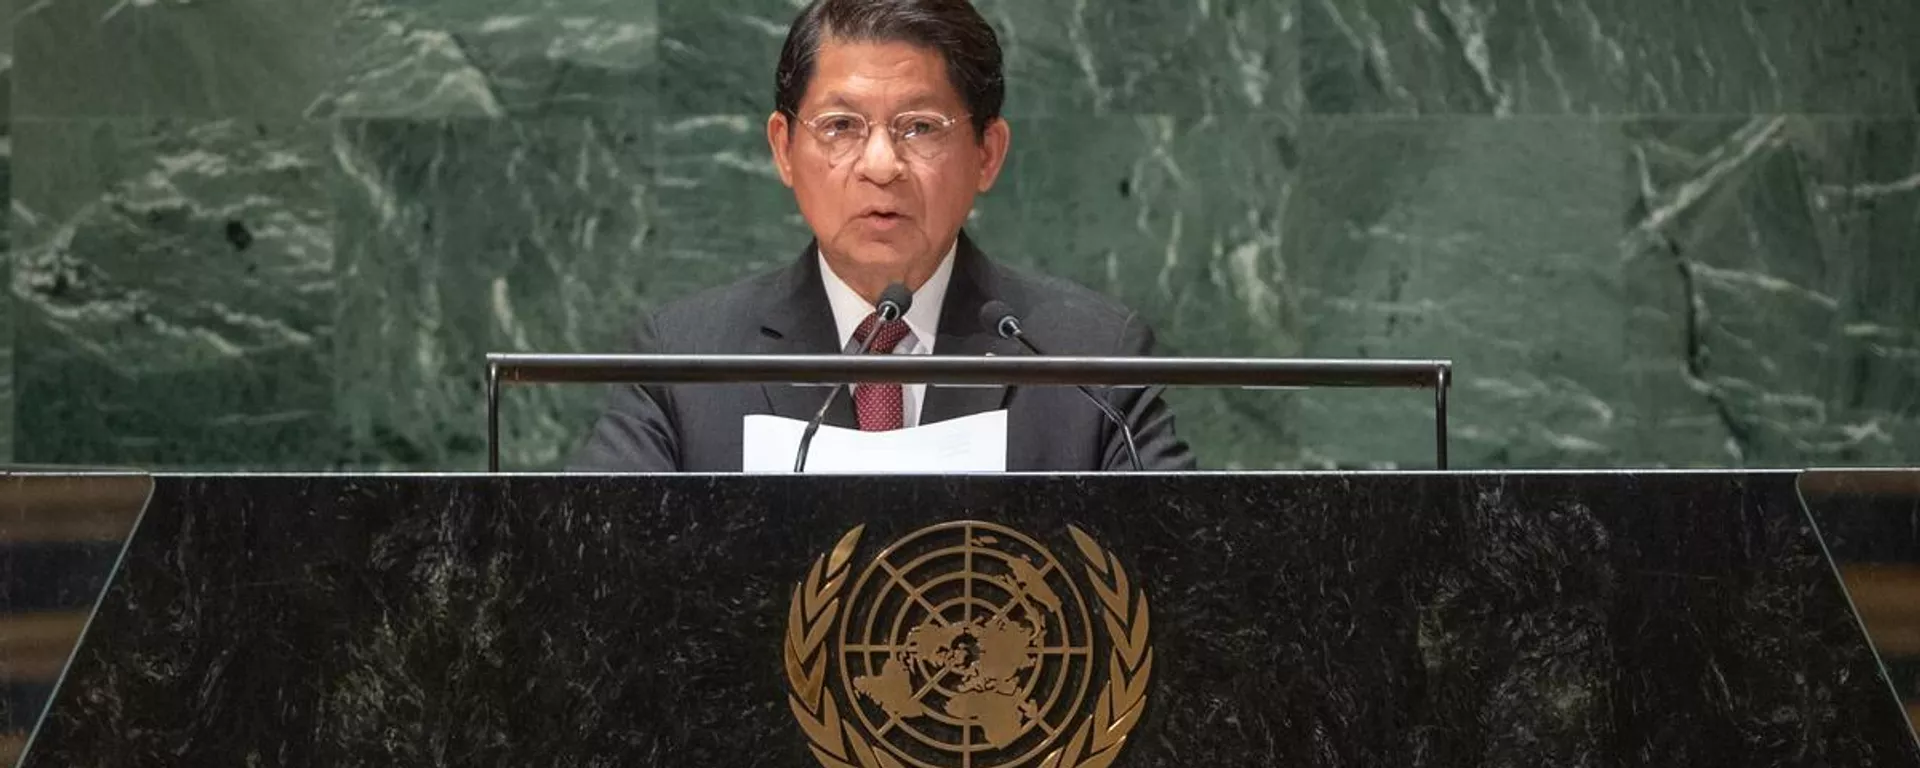 Denis Ronaldo Moncada, ministro das Relações Exteriores da Nicarágua, discursa na 78ª Assembleia Geral da ONU, em 26 de setembro de 2023 - Sputnik Brasil, 1920, 26.09.2023